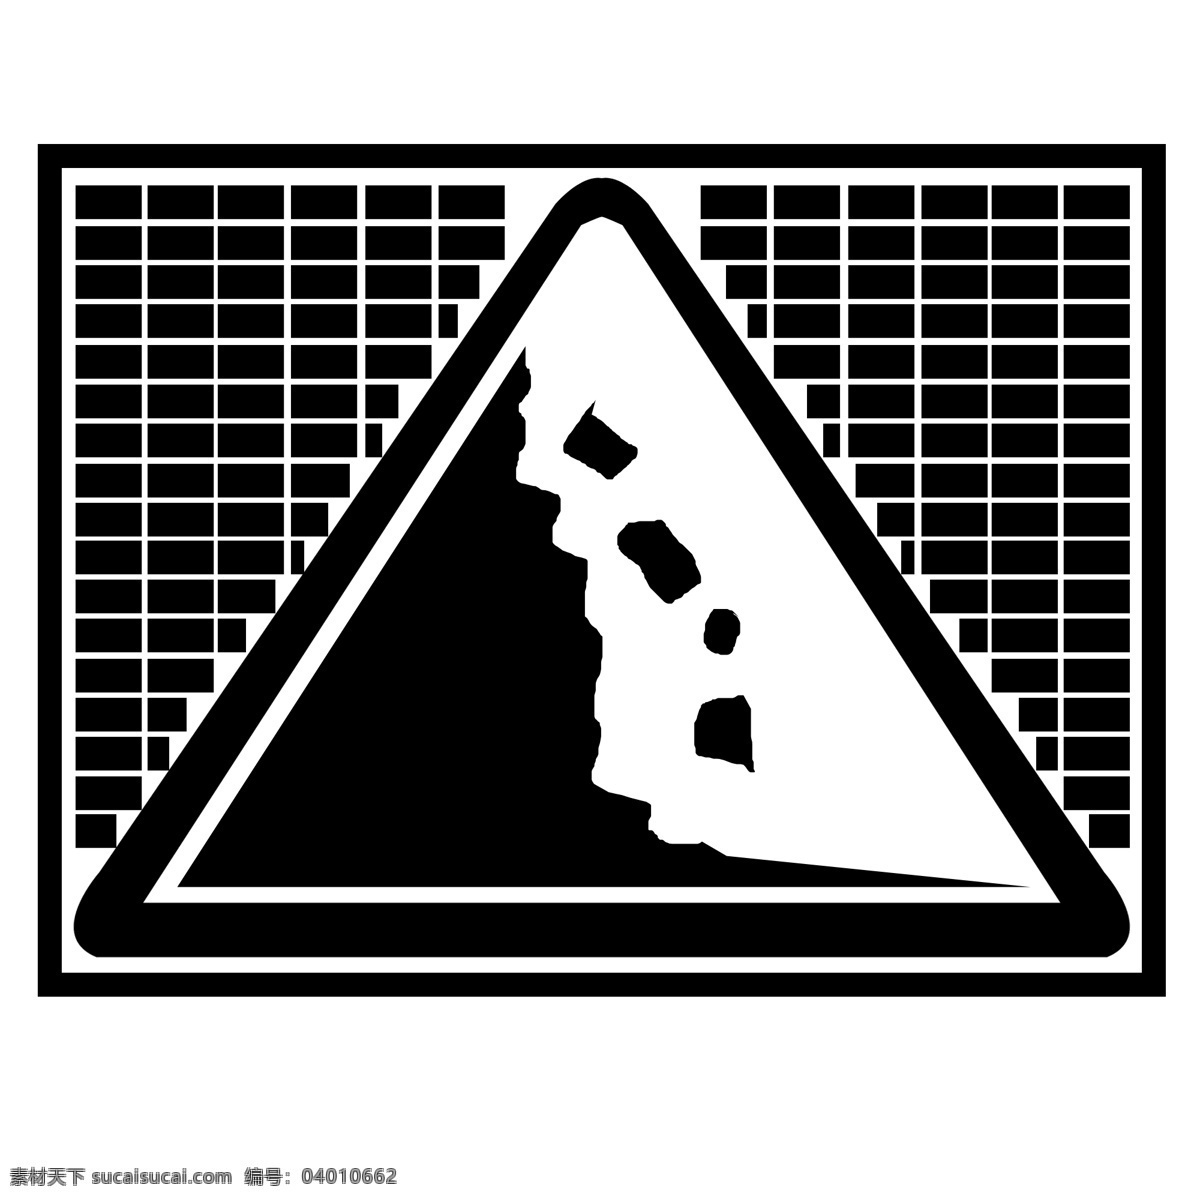 交通 三角形 小心 落石 小心落石 标志 图标 警示标志 注意落石 标示矢量 机动车 道路标识